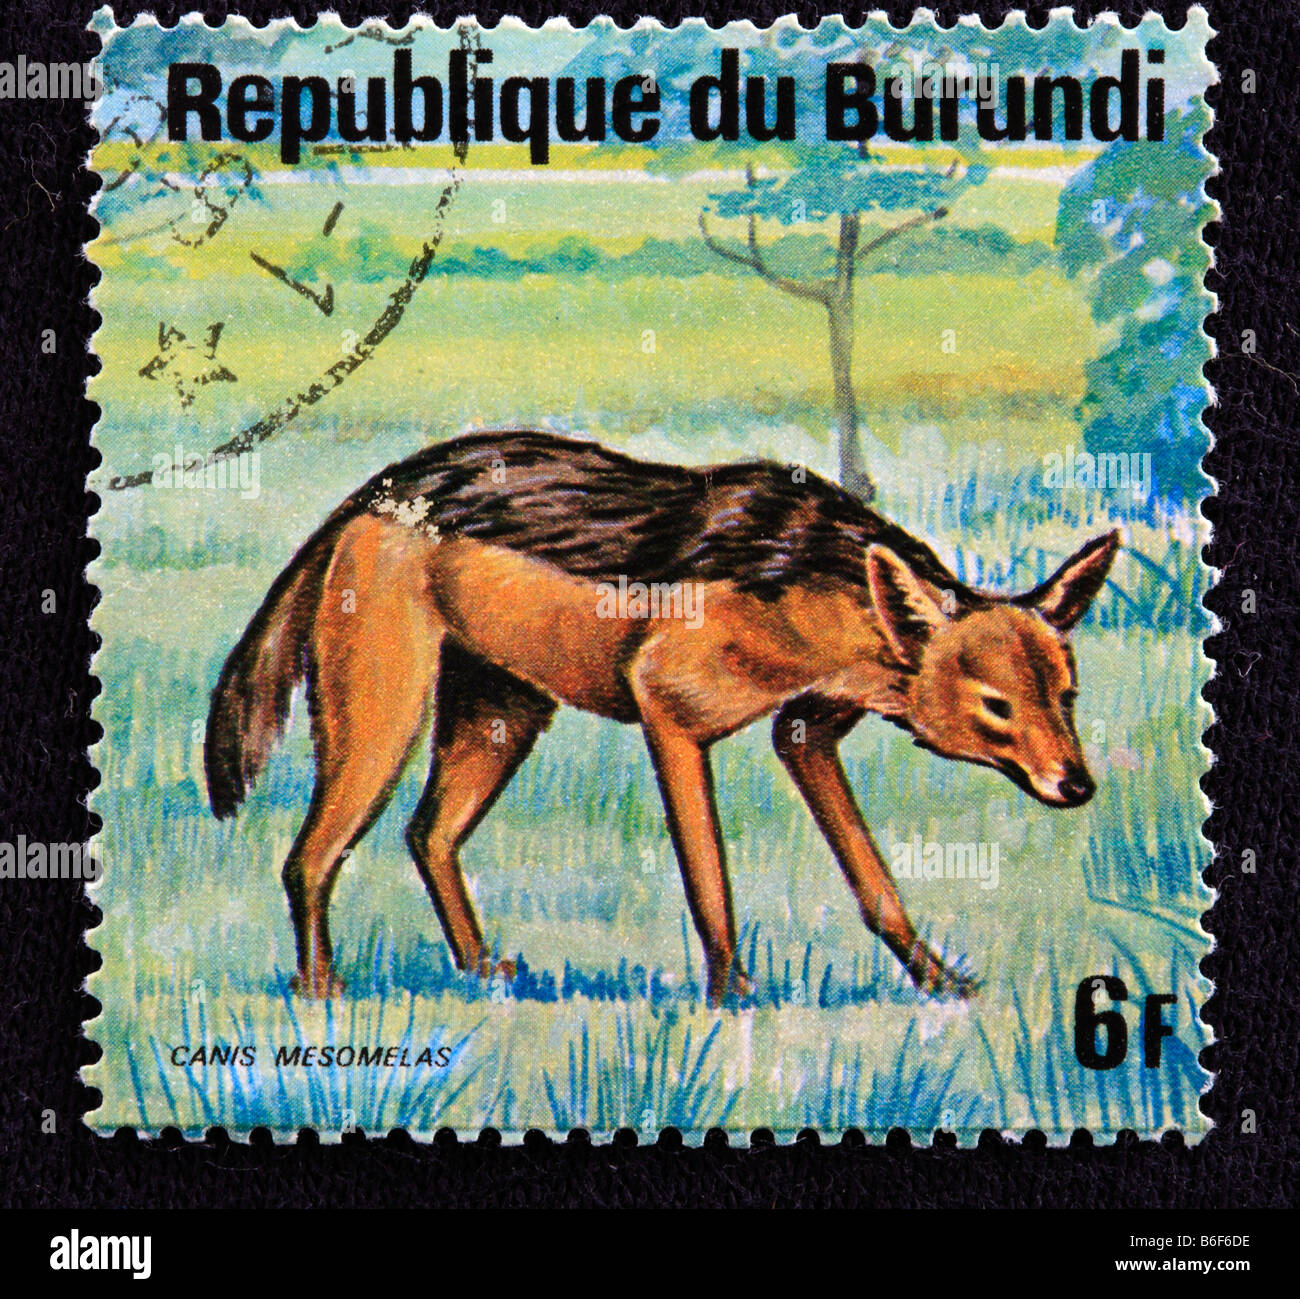 Chacal noir soutenu (Canis mesomelas), timbre-poste, République du Burundi Banque D'Images